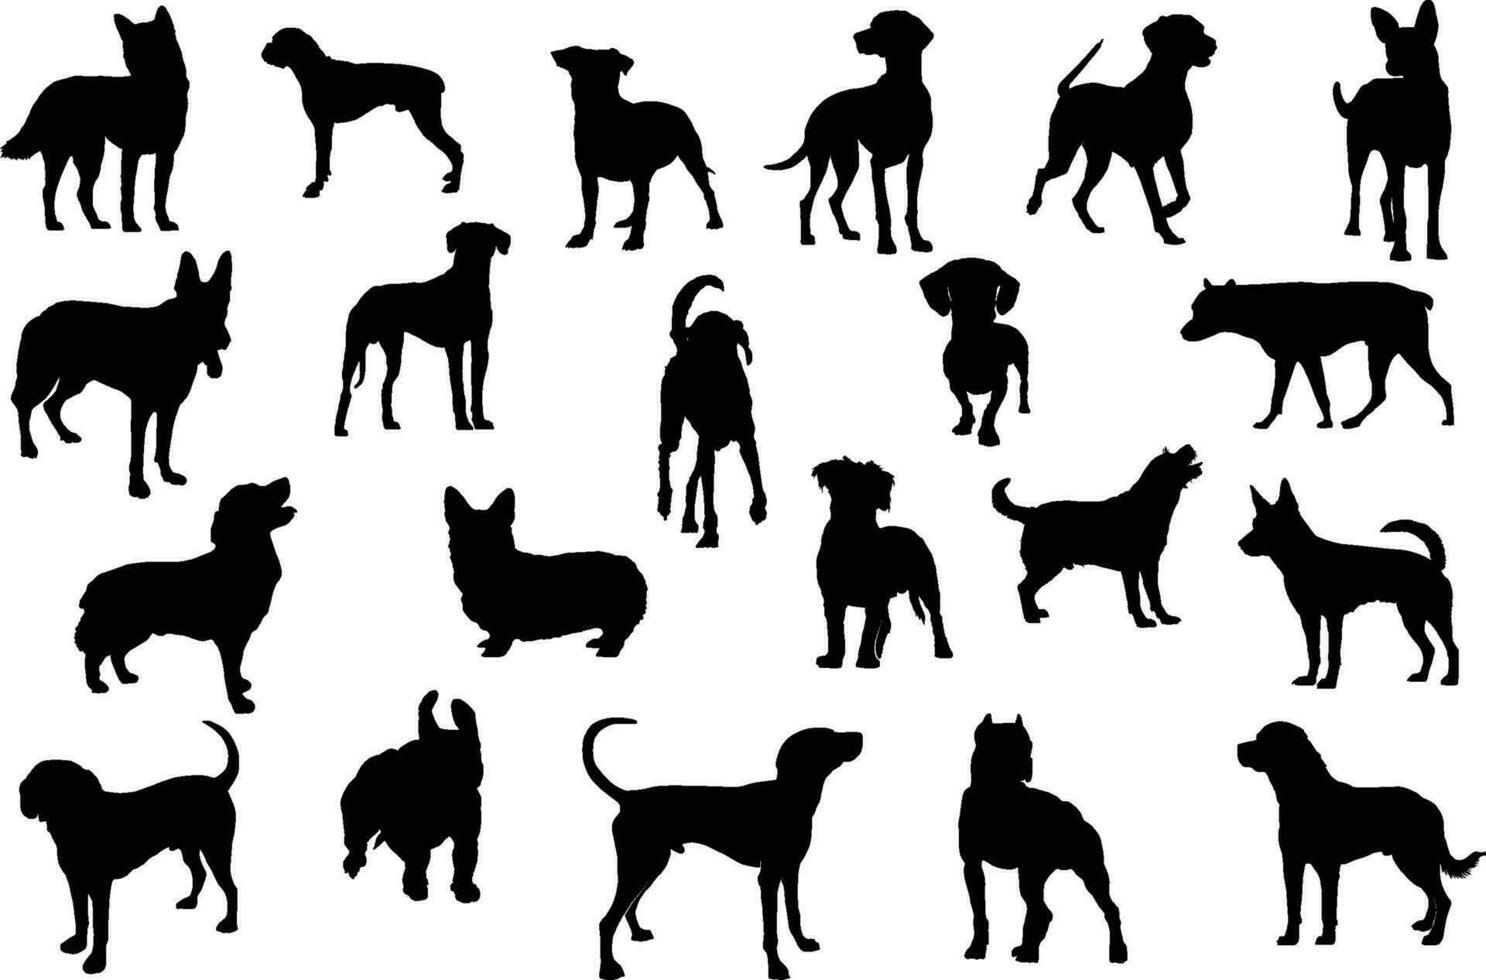 cane silhouette fascio, cane silhouette vettore gratuito Scarica, molti cane razze nel sagome